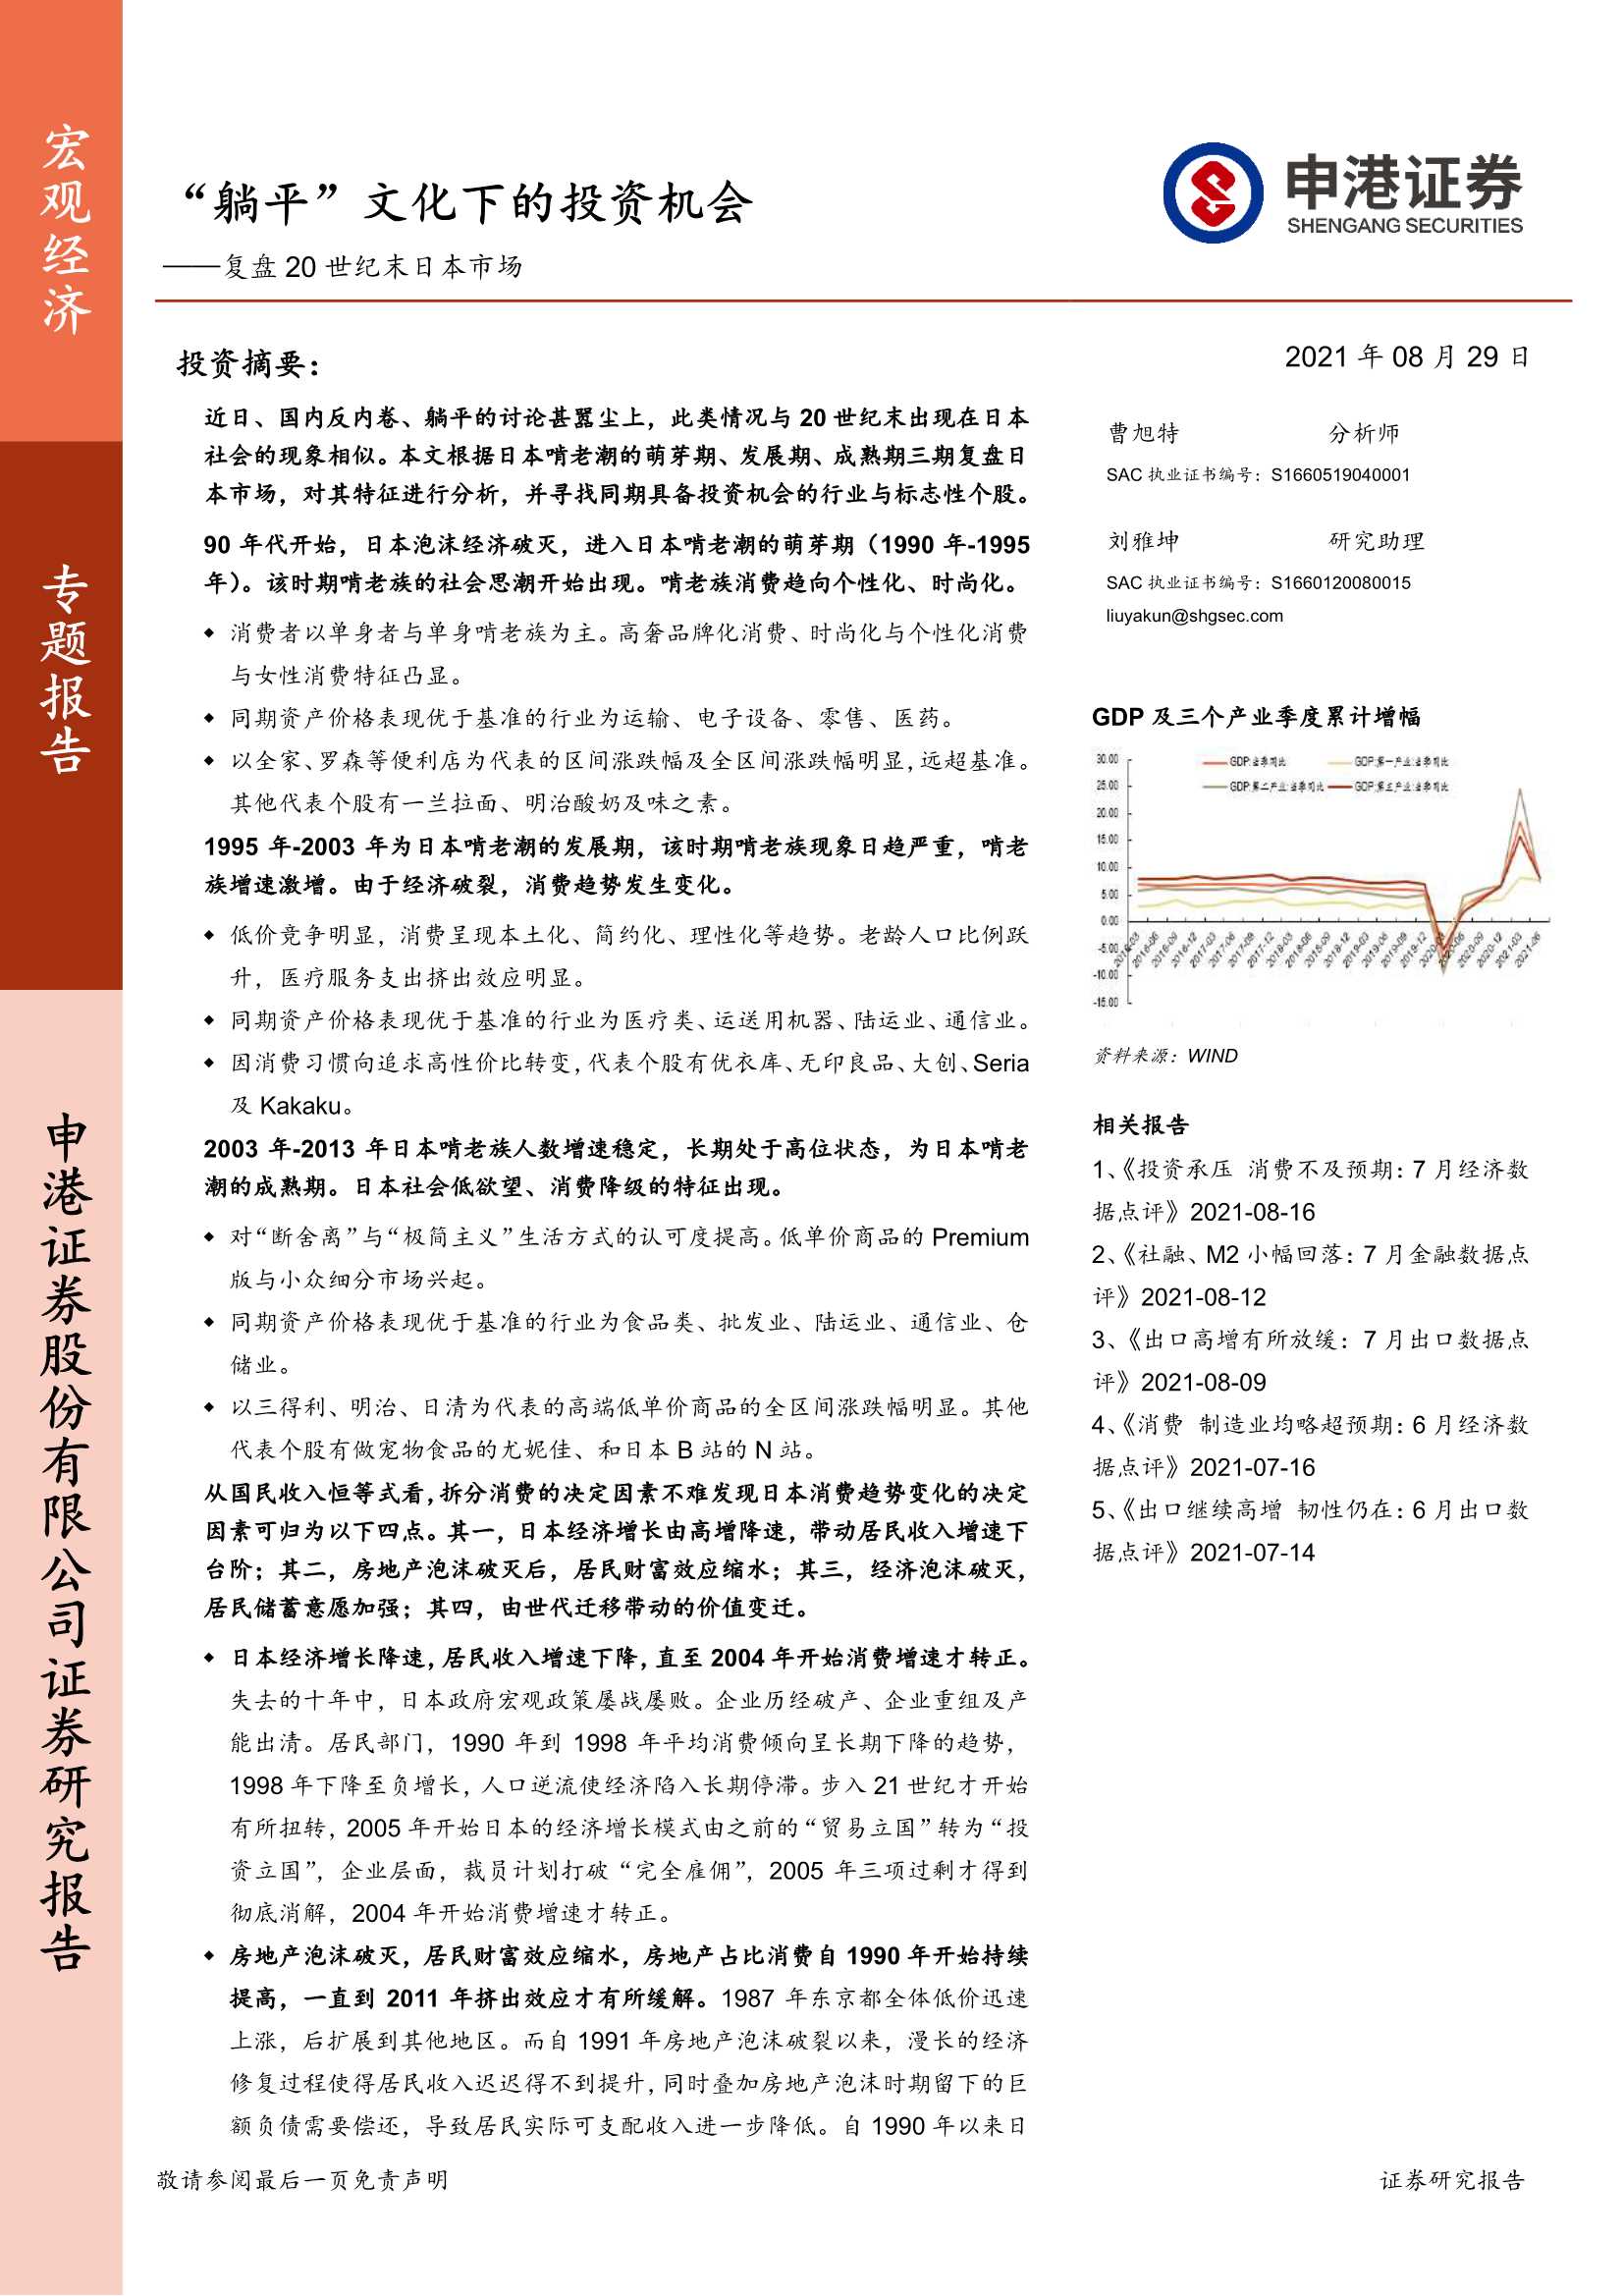 申港证券-复盘20世纪末日本市场：“躺平”文化下的投资机会-20210829-31页